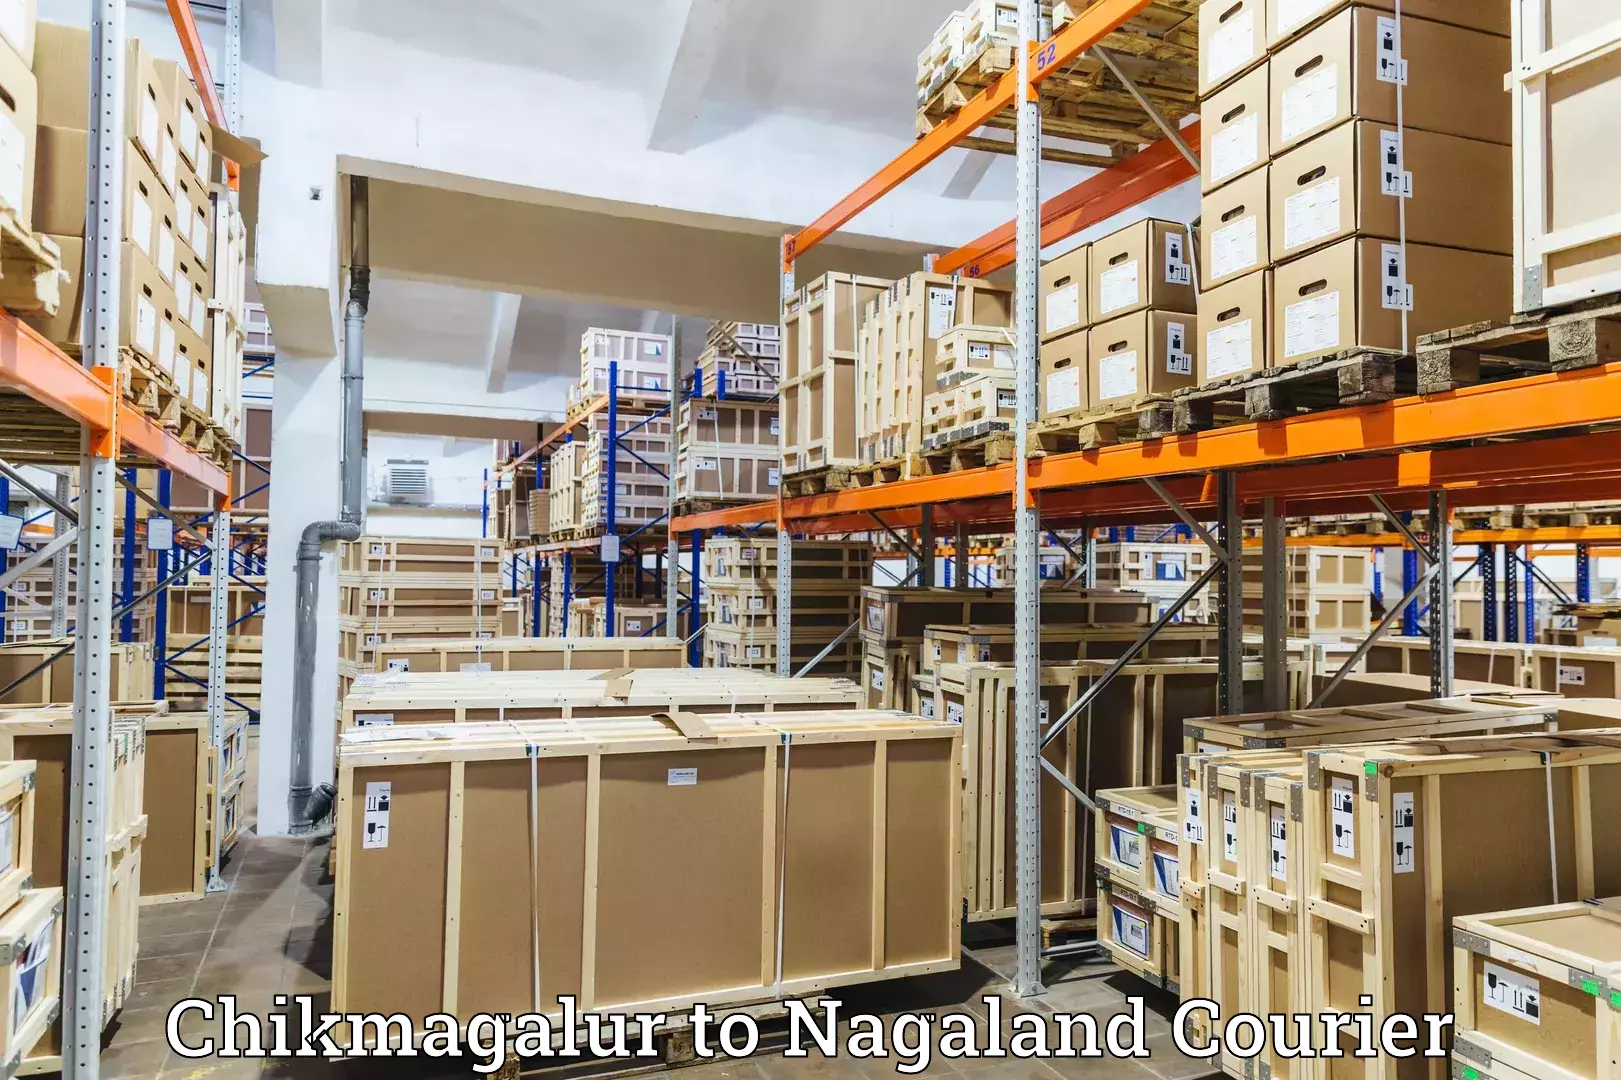 Courier service comparison Chikmagalur to Nagaland